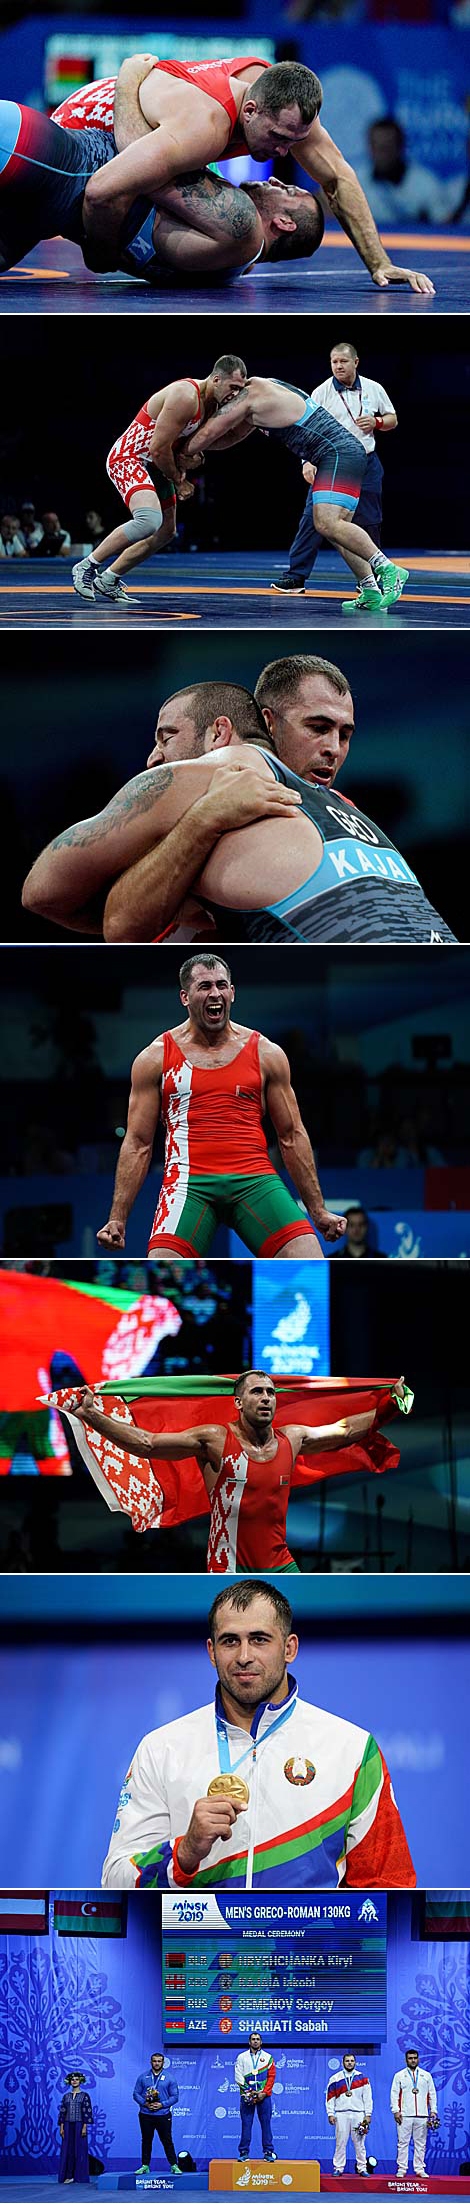 白罗斯摔跤手基里尔•格里先科获得第二届欧运会比赛金牌